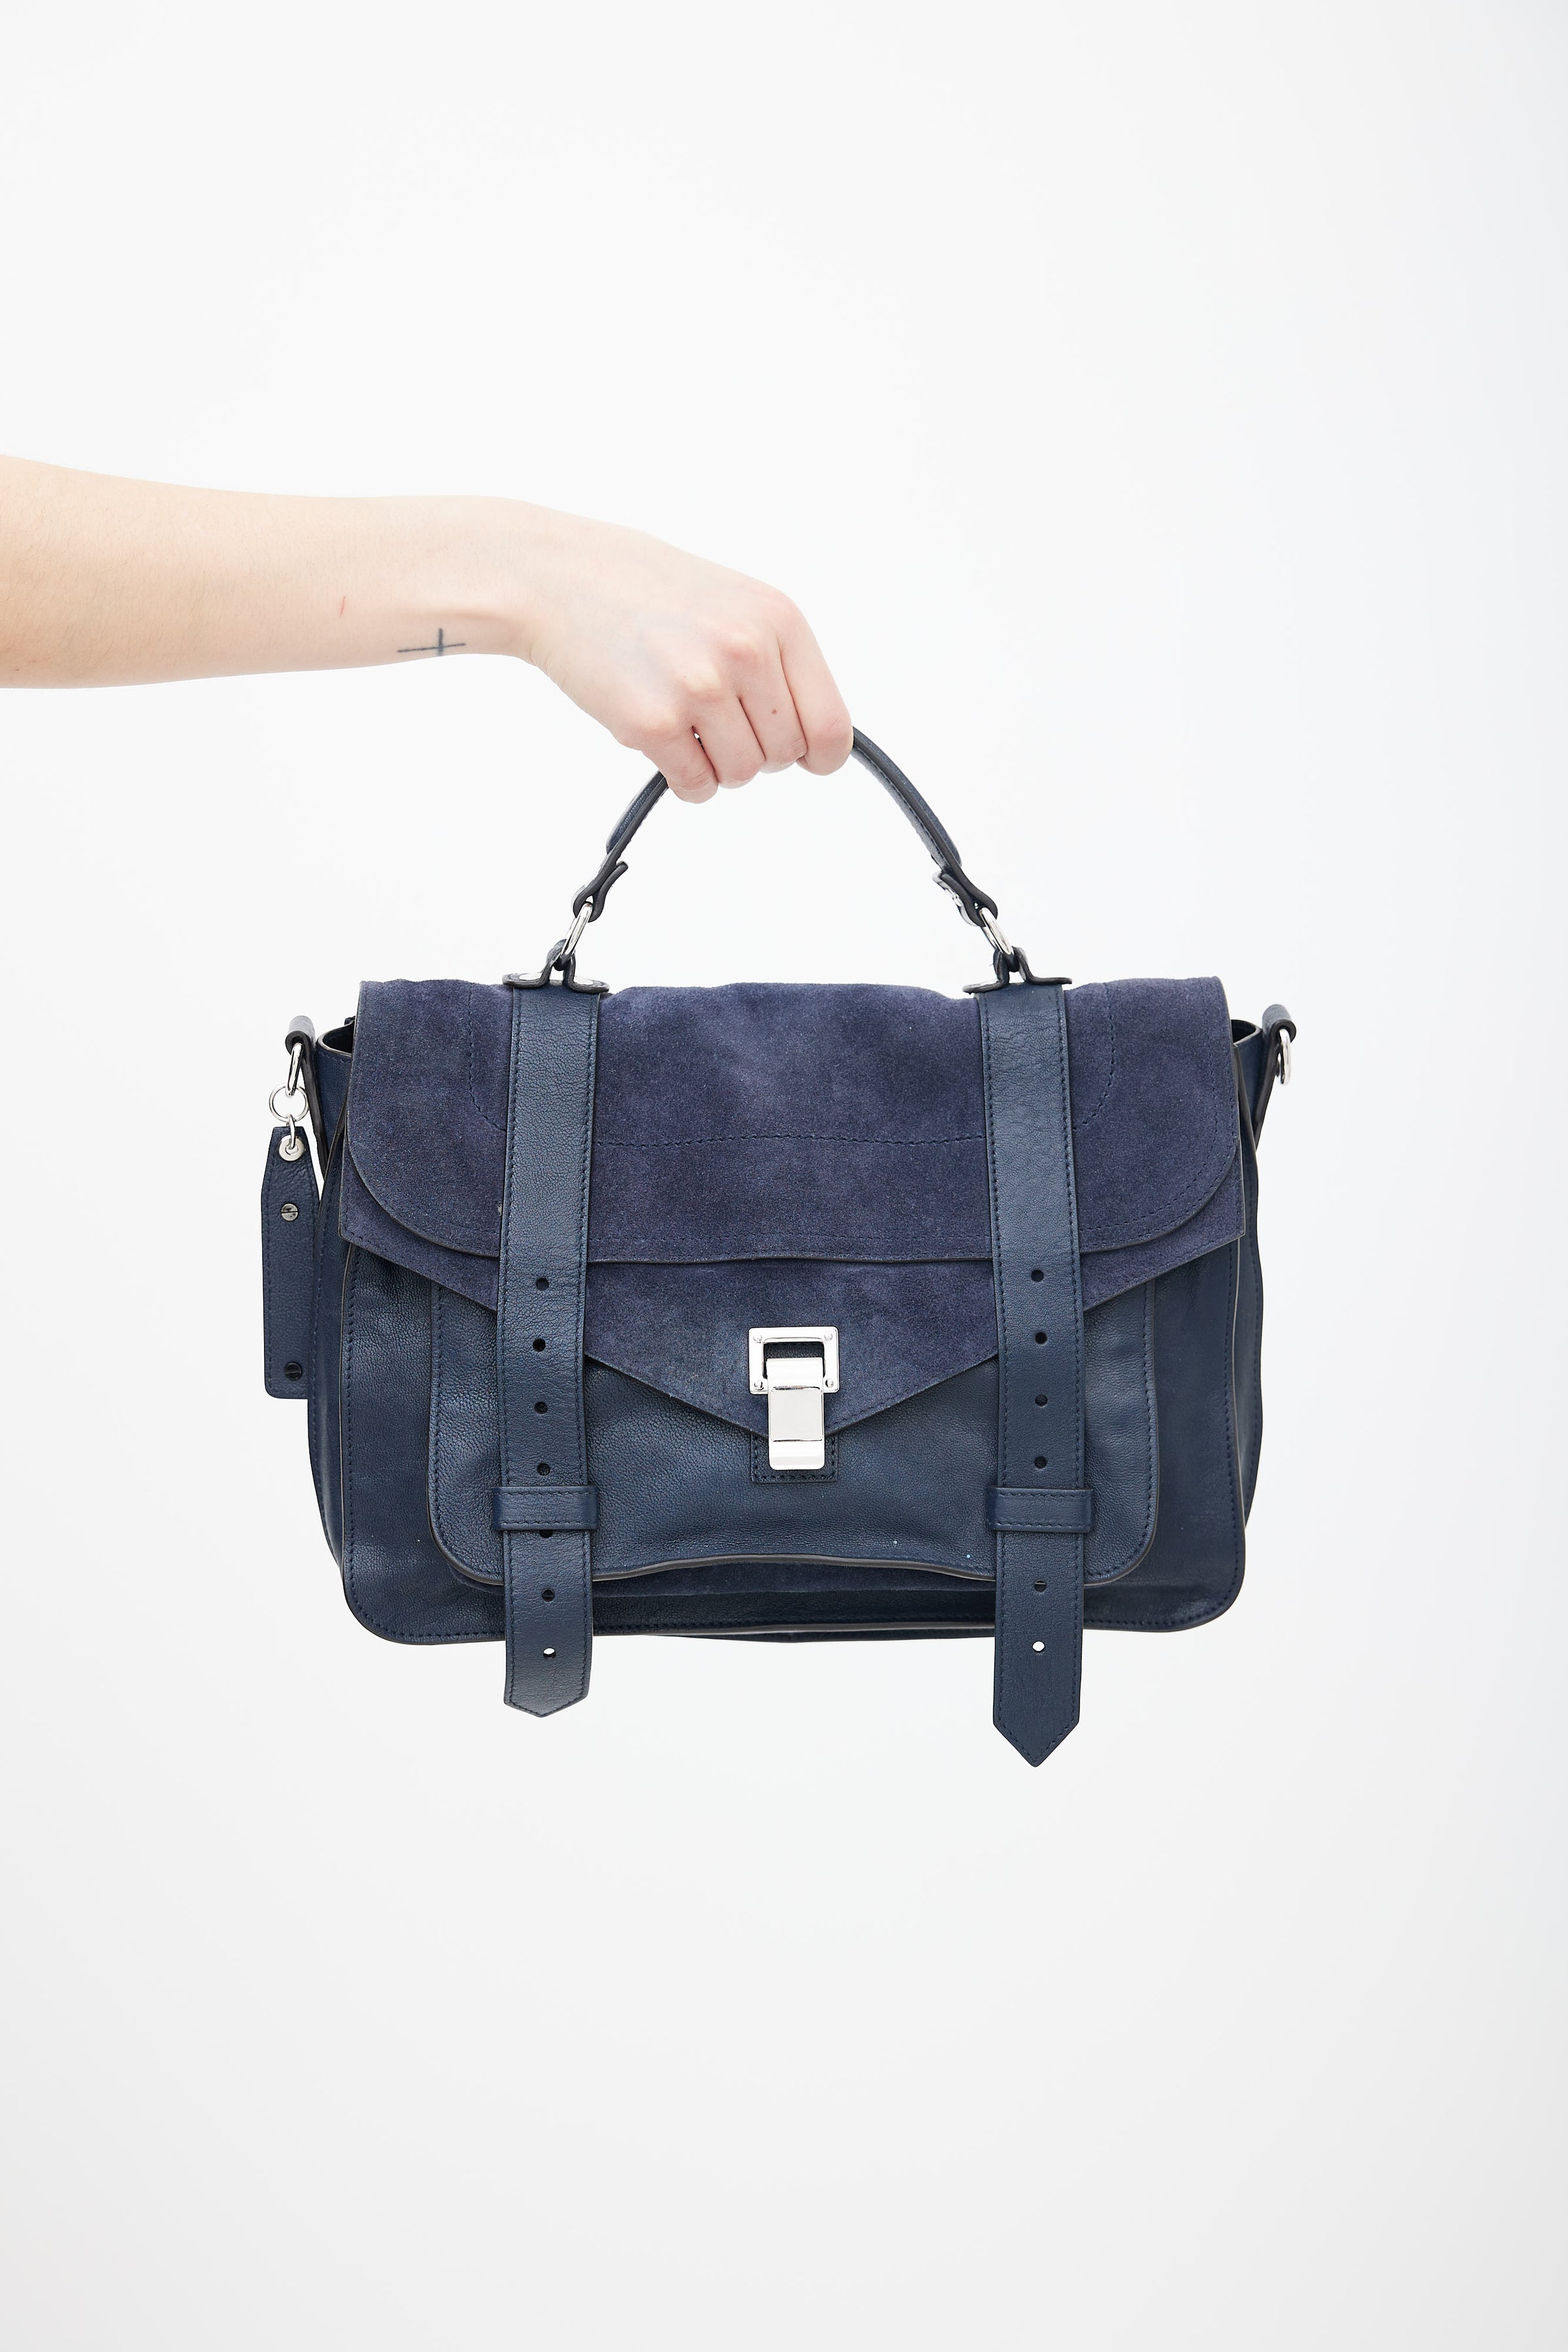 Proenza Schouler // Navy Suede & Leather PS1 Shoulder Bag – VSP 